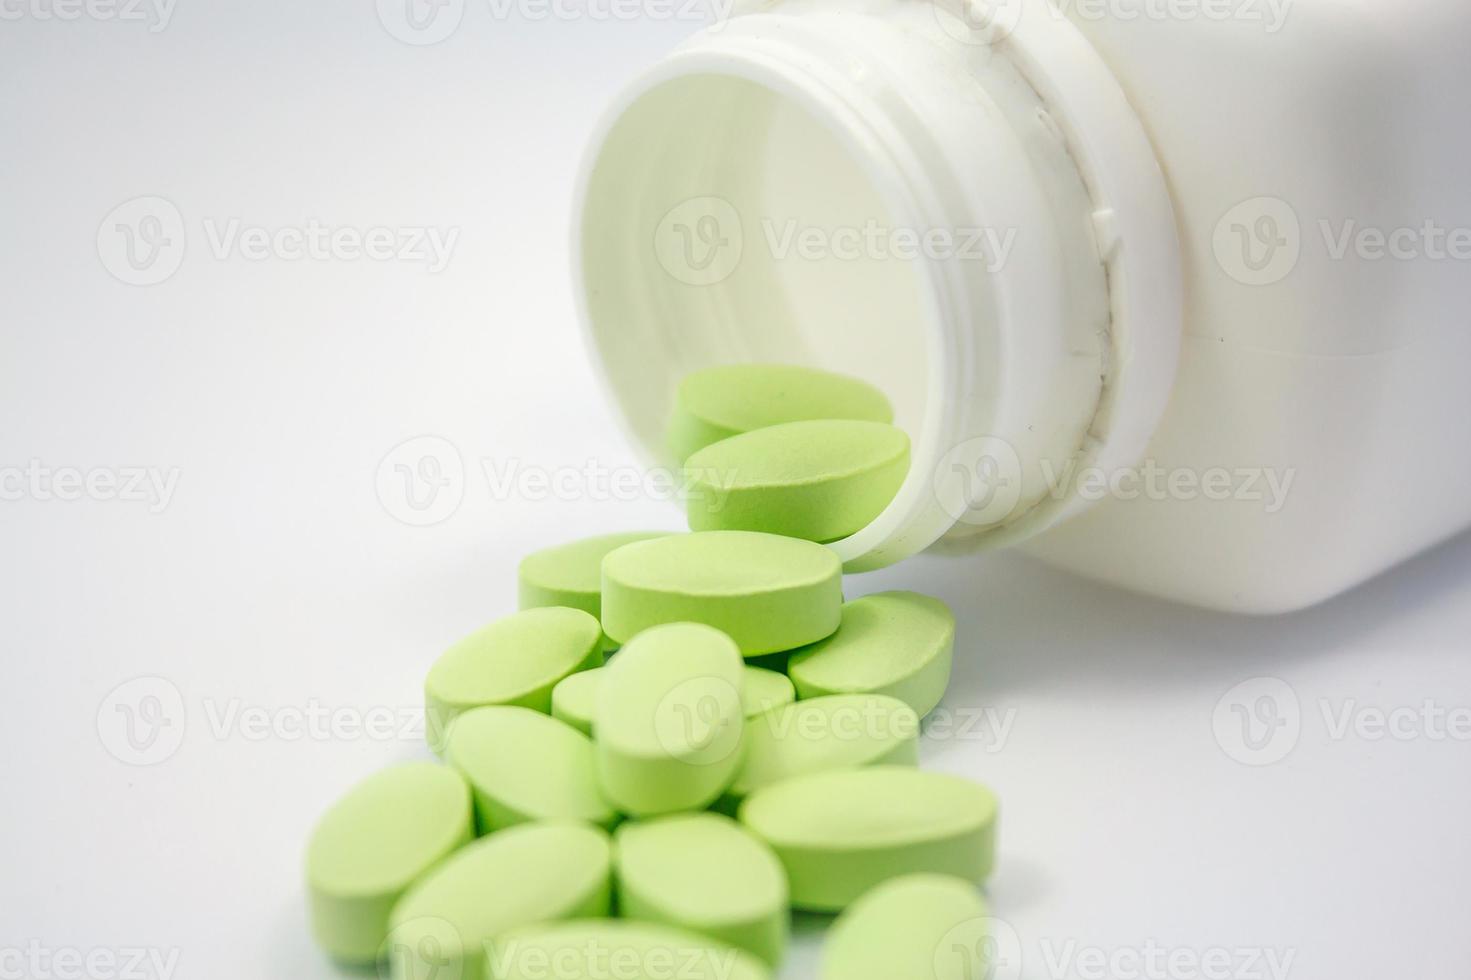 gröna piller och piller flaska på vit bakgrund foto